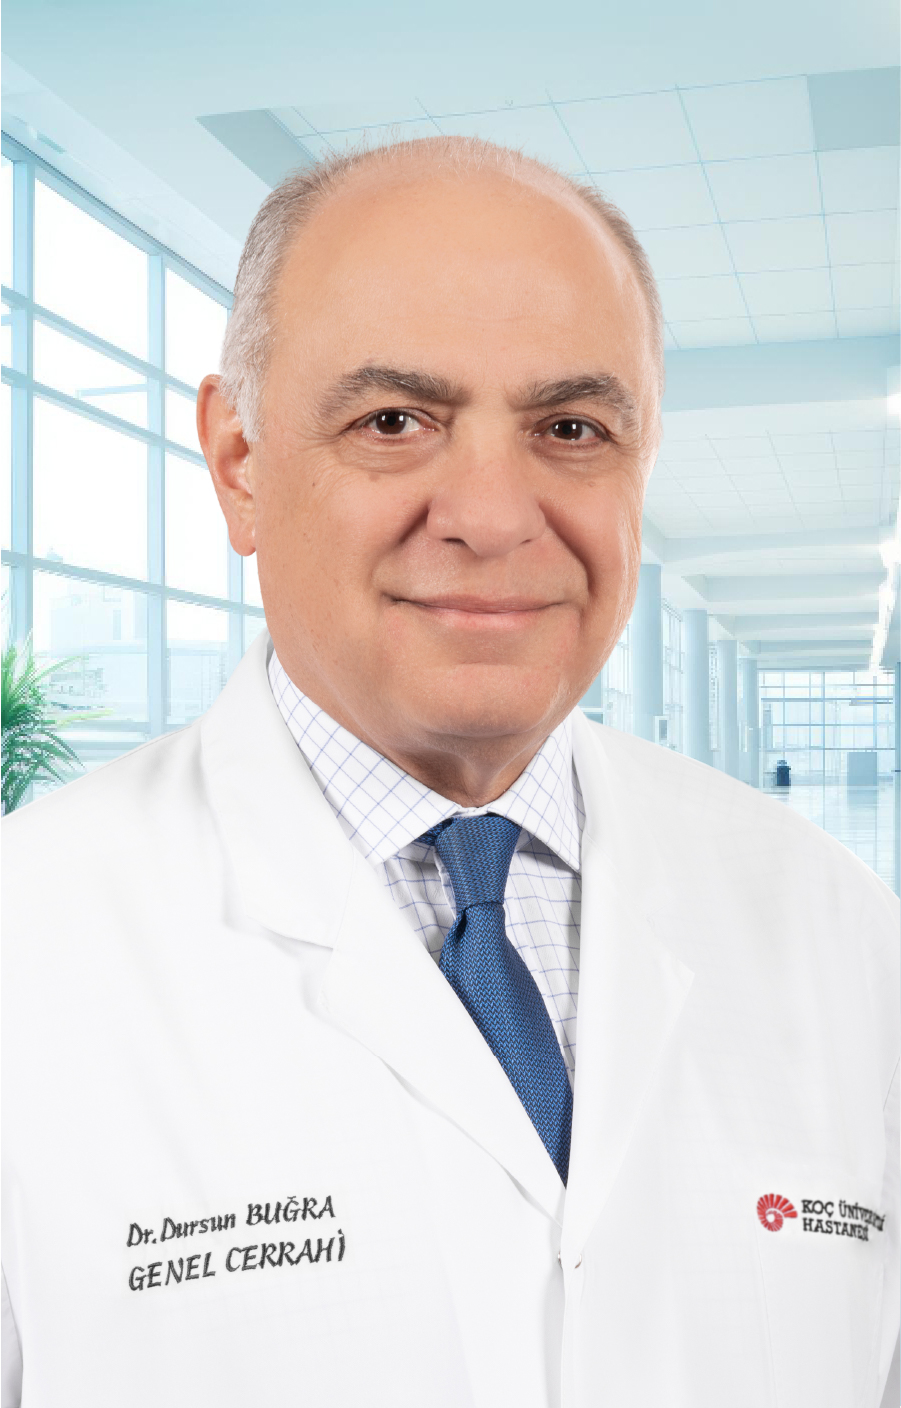 Prof. Dr. Dursun BUĞRA